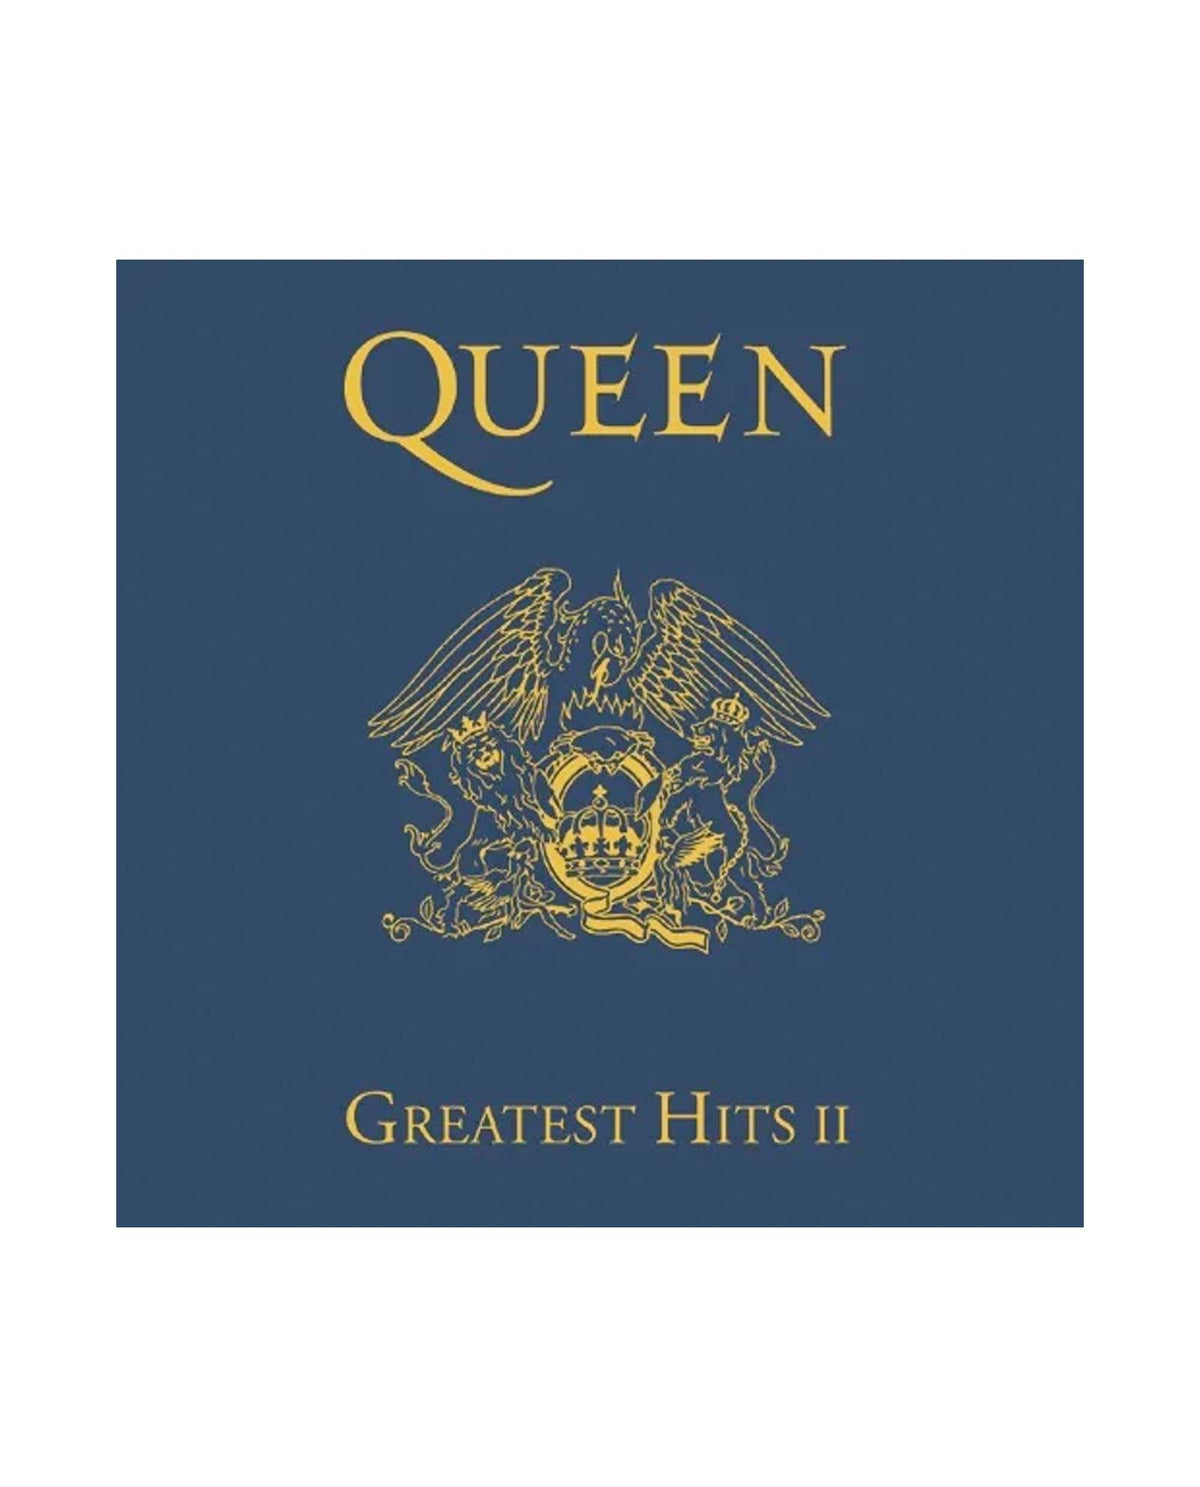 Queen Vinilos: colección completa de discos